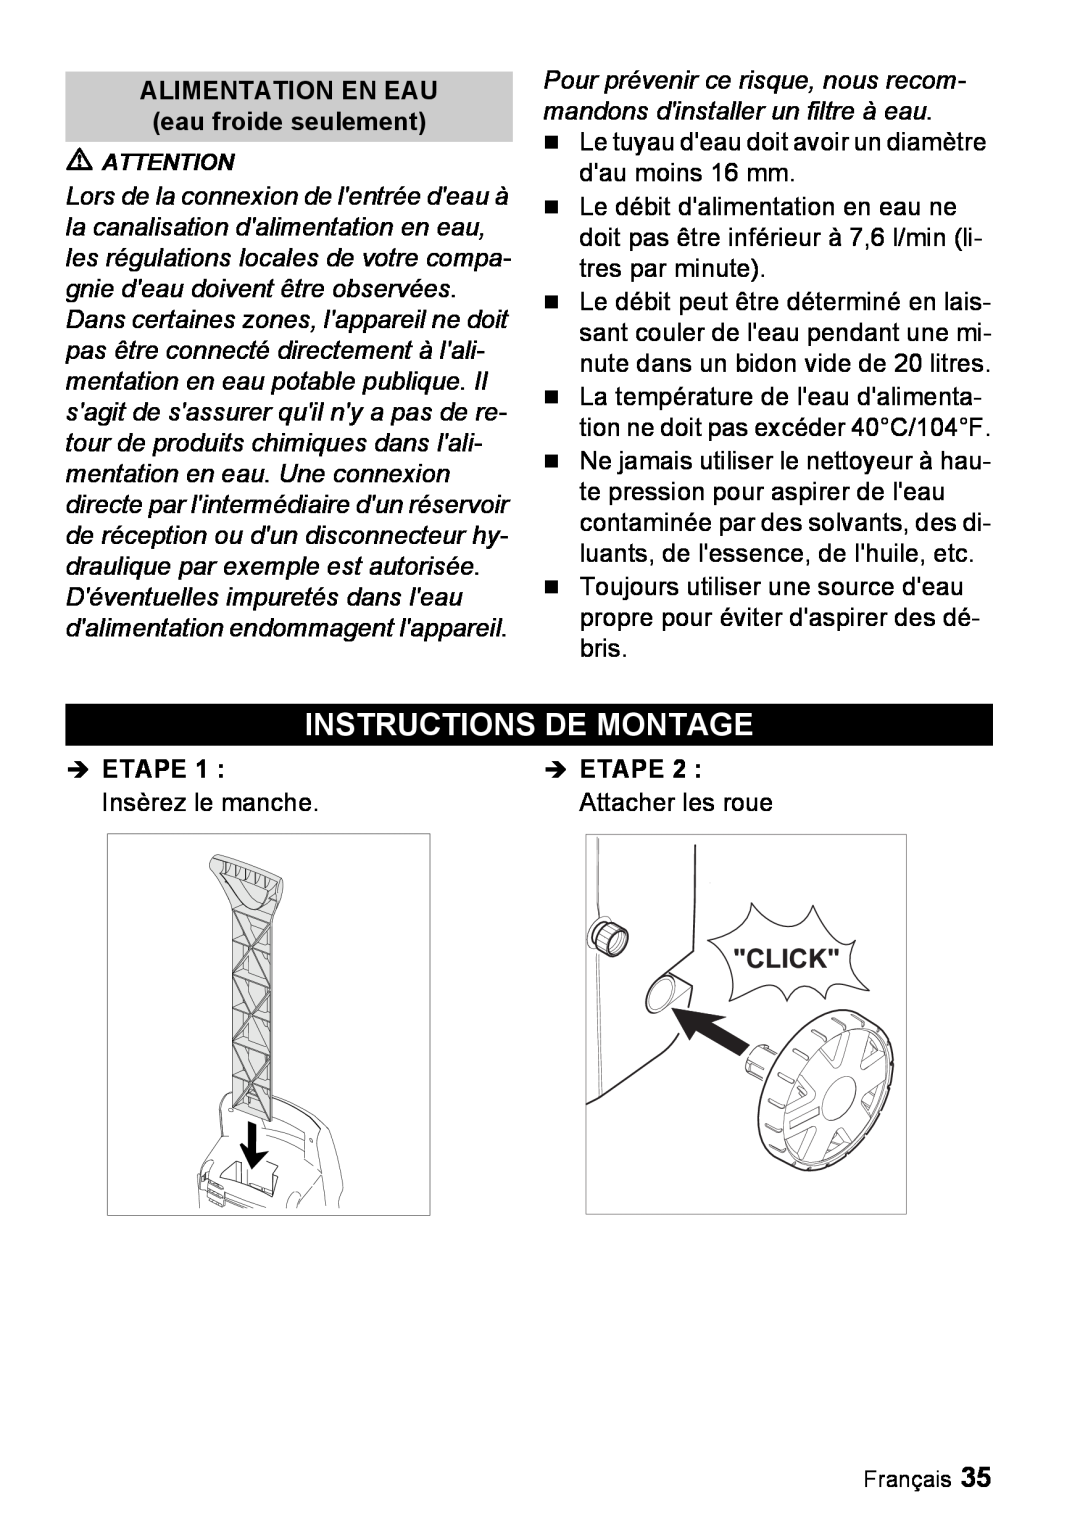 Karcher K 2.26M manual Instructions De Montage, ALIMENTATION EN EAU eau froide seulement, Î Etape 